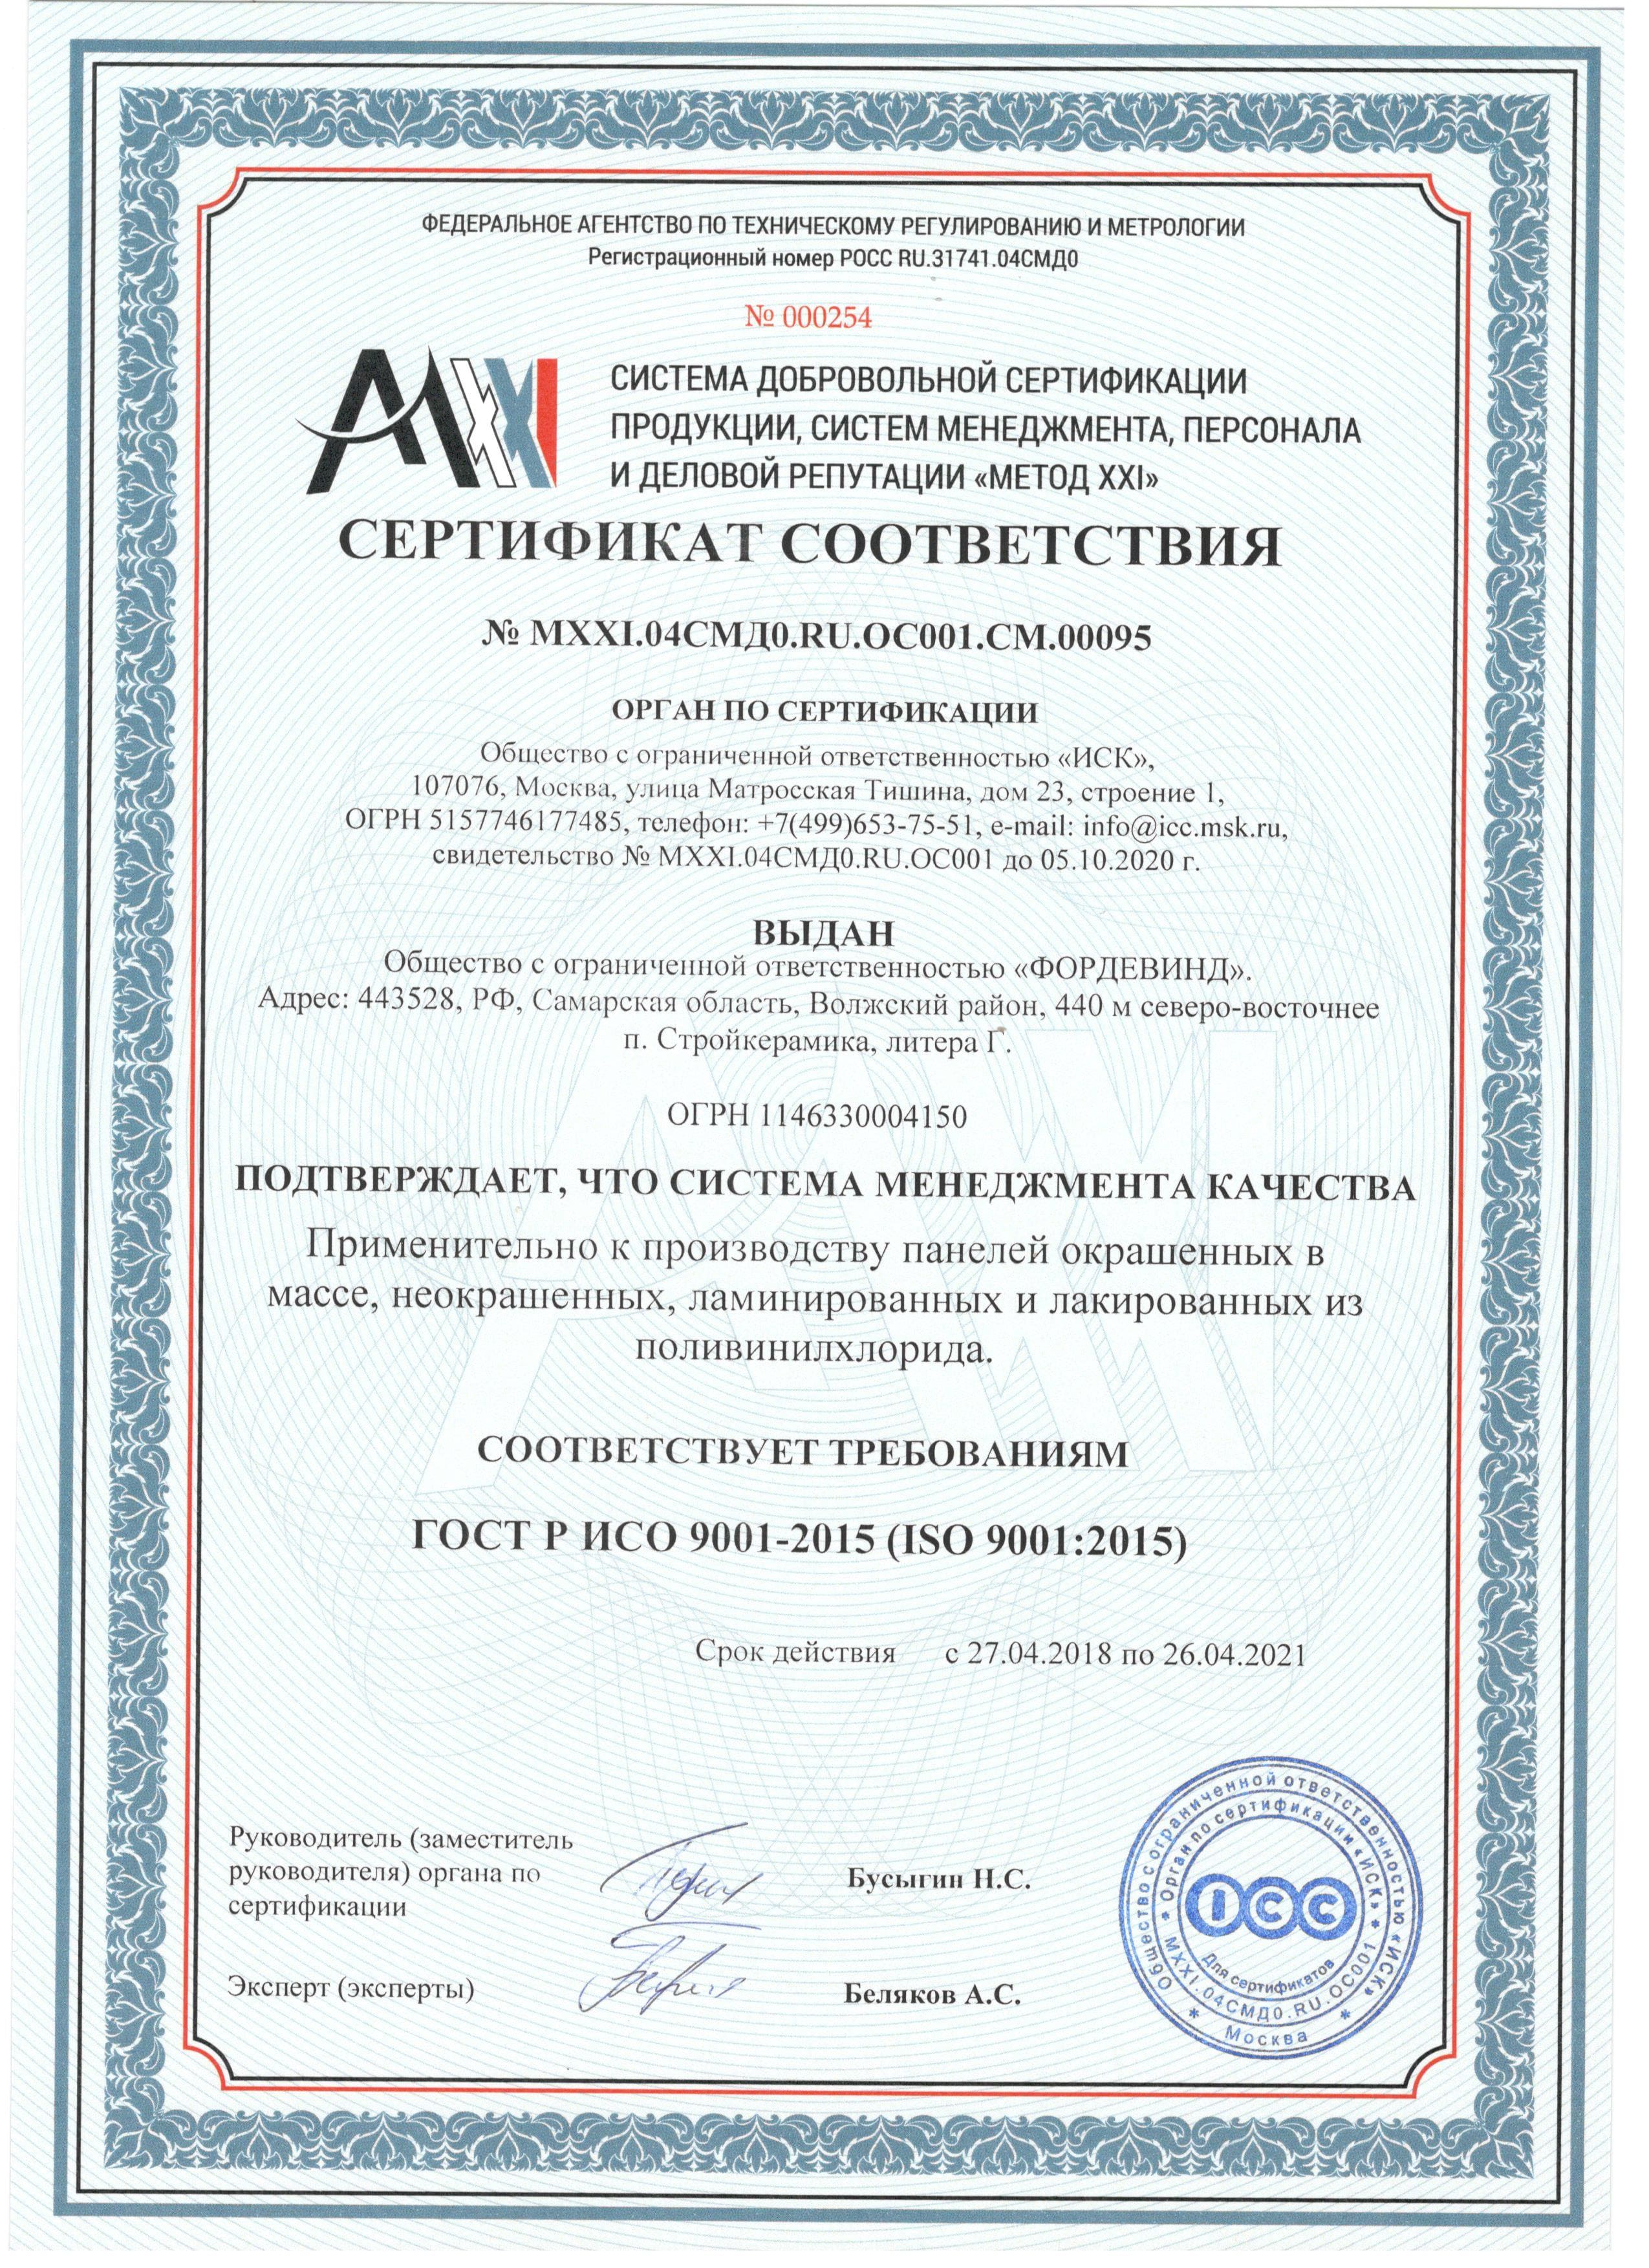 Сертификат соответствия №000254